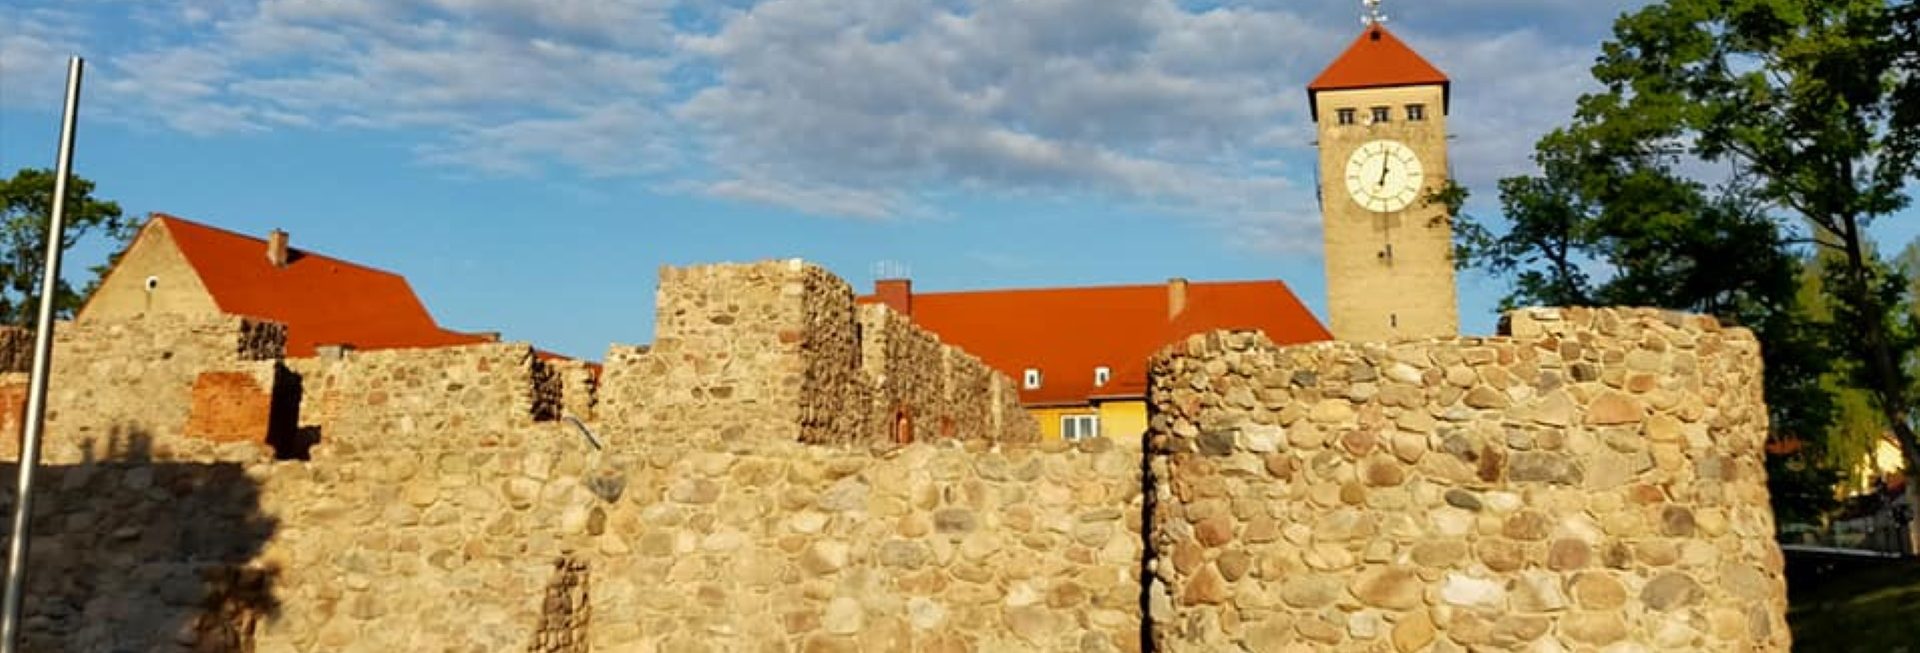 Odnowione ruiny Zamku Krzyżackiego w Szczytnie.